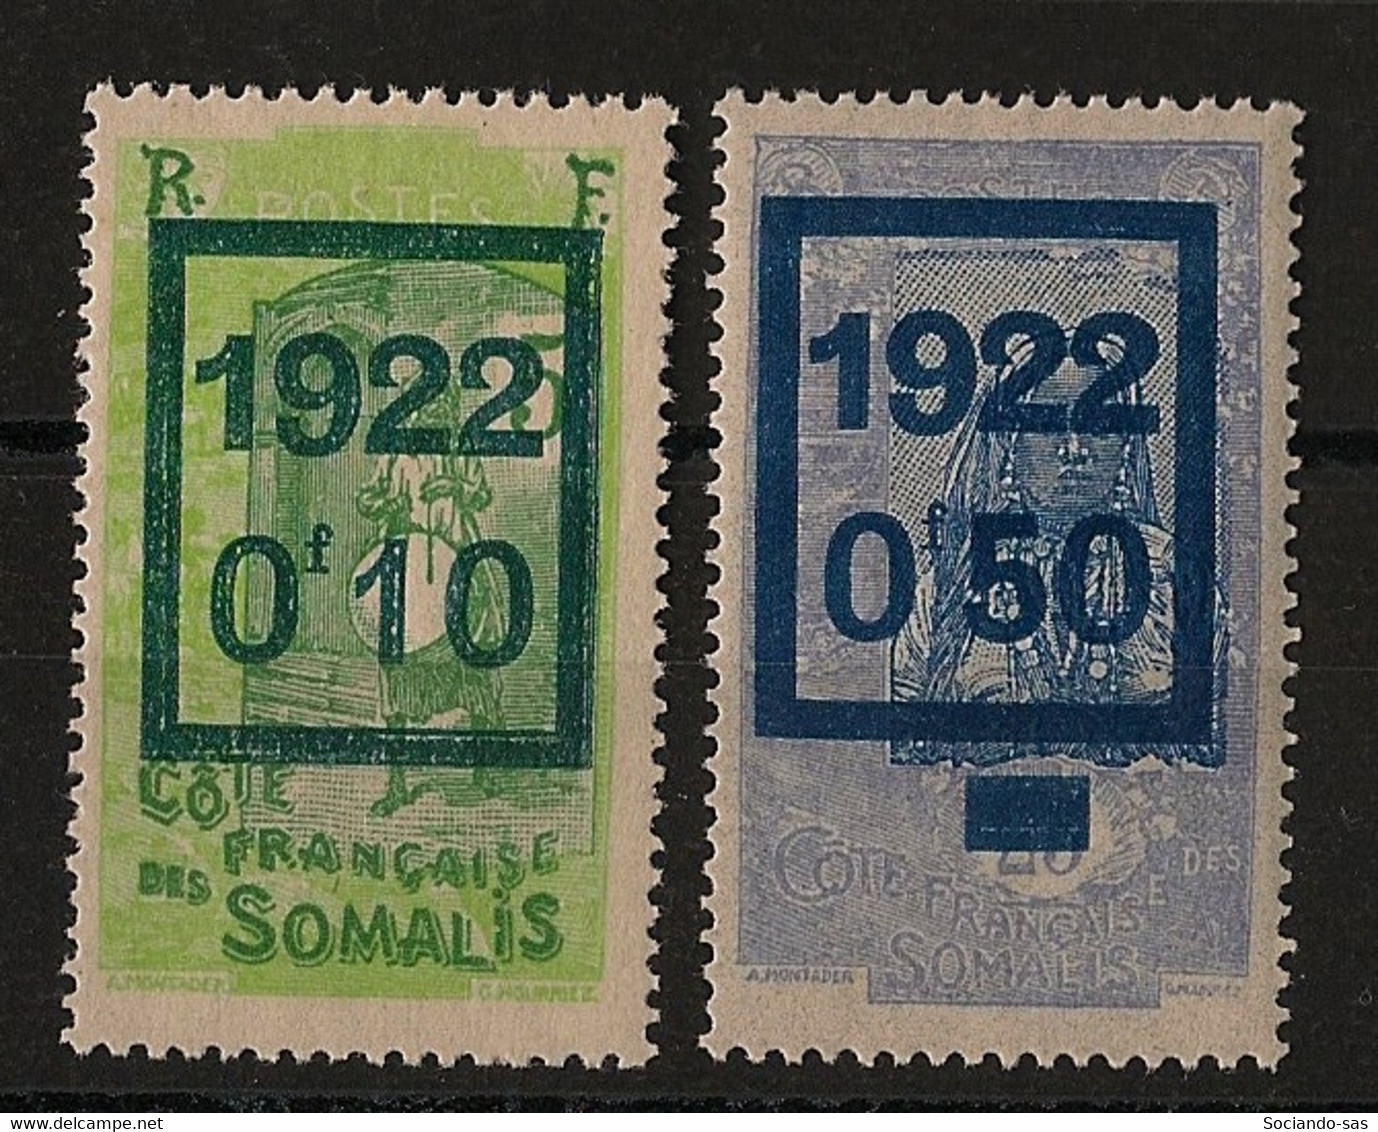 COTE DES SOMALIS - 1922 - N°YT. 101 à 102 - Série Complète - Neuf * / MH VF - Ongebruikt